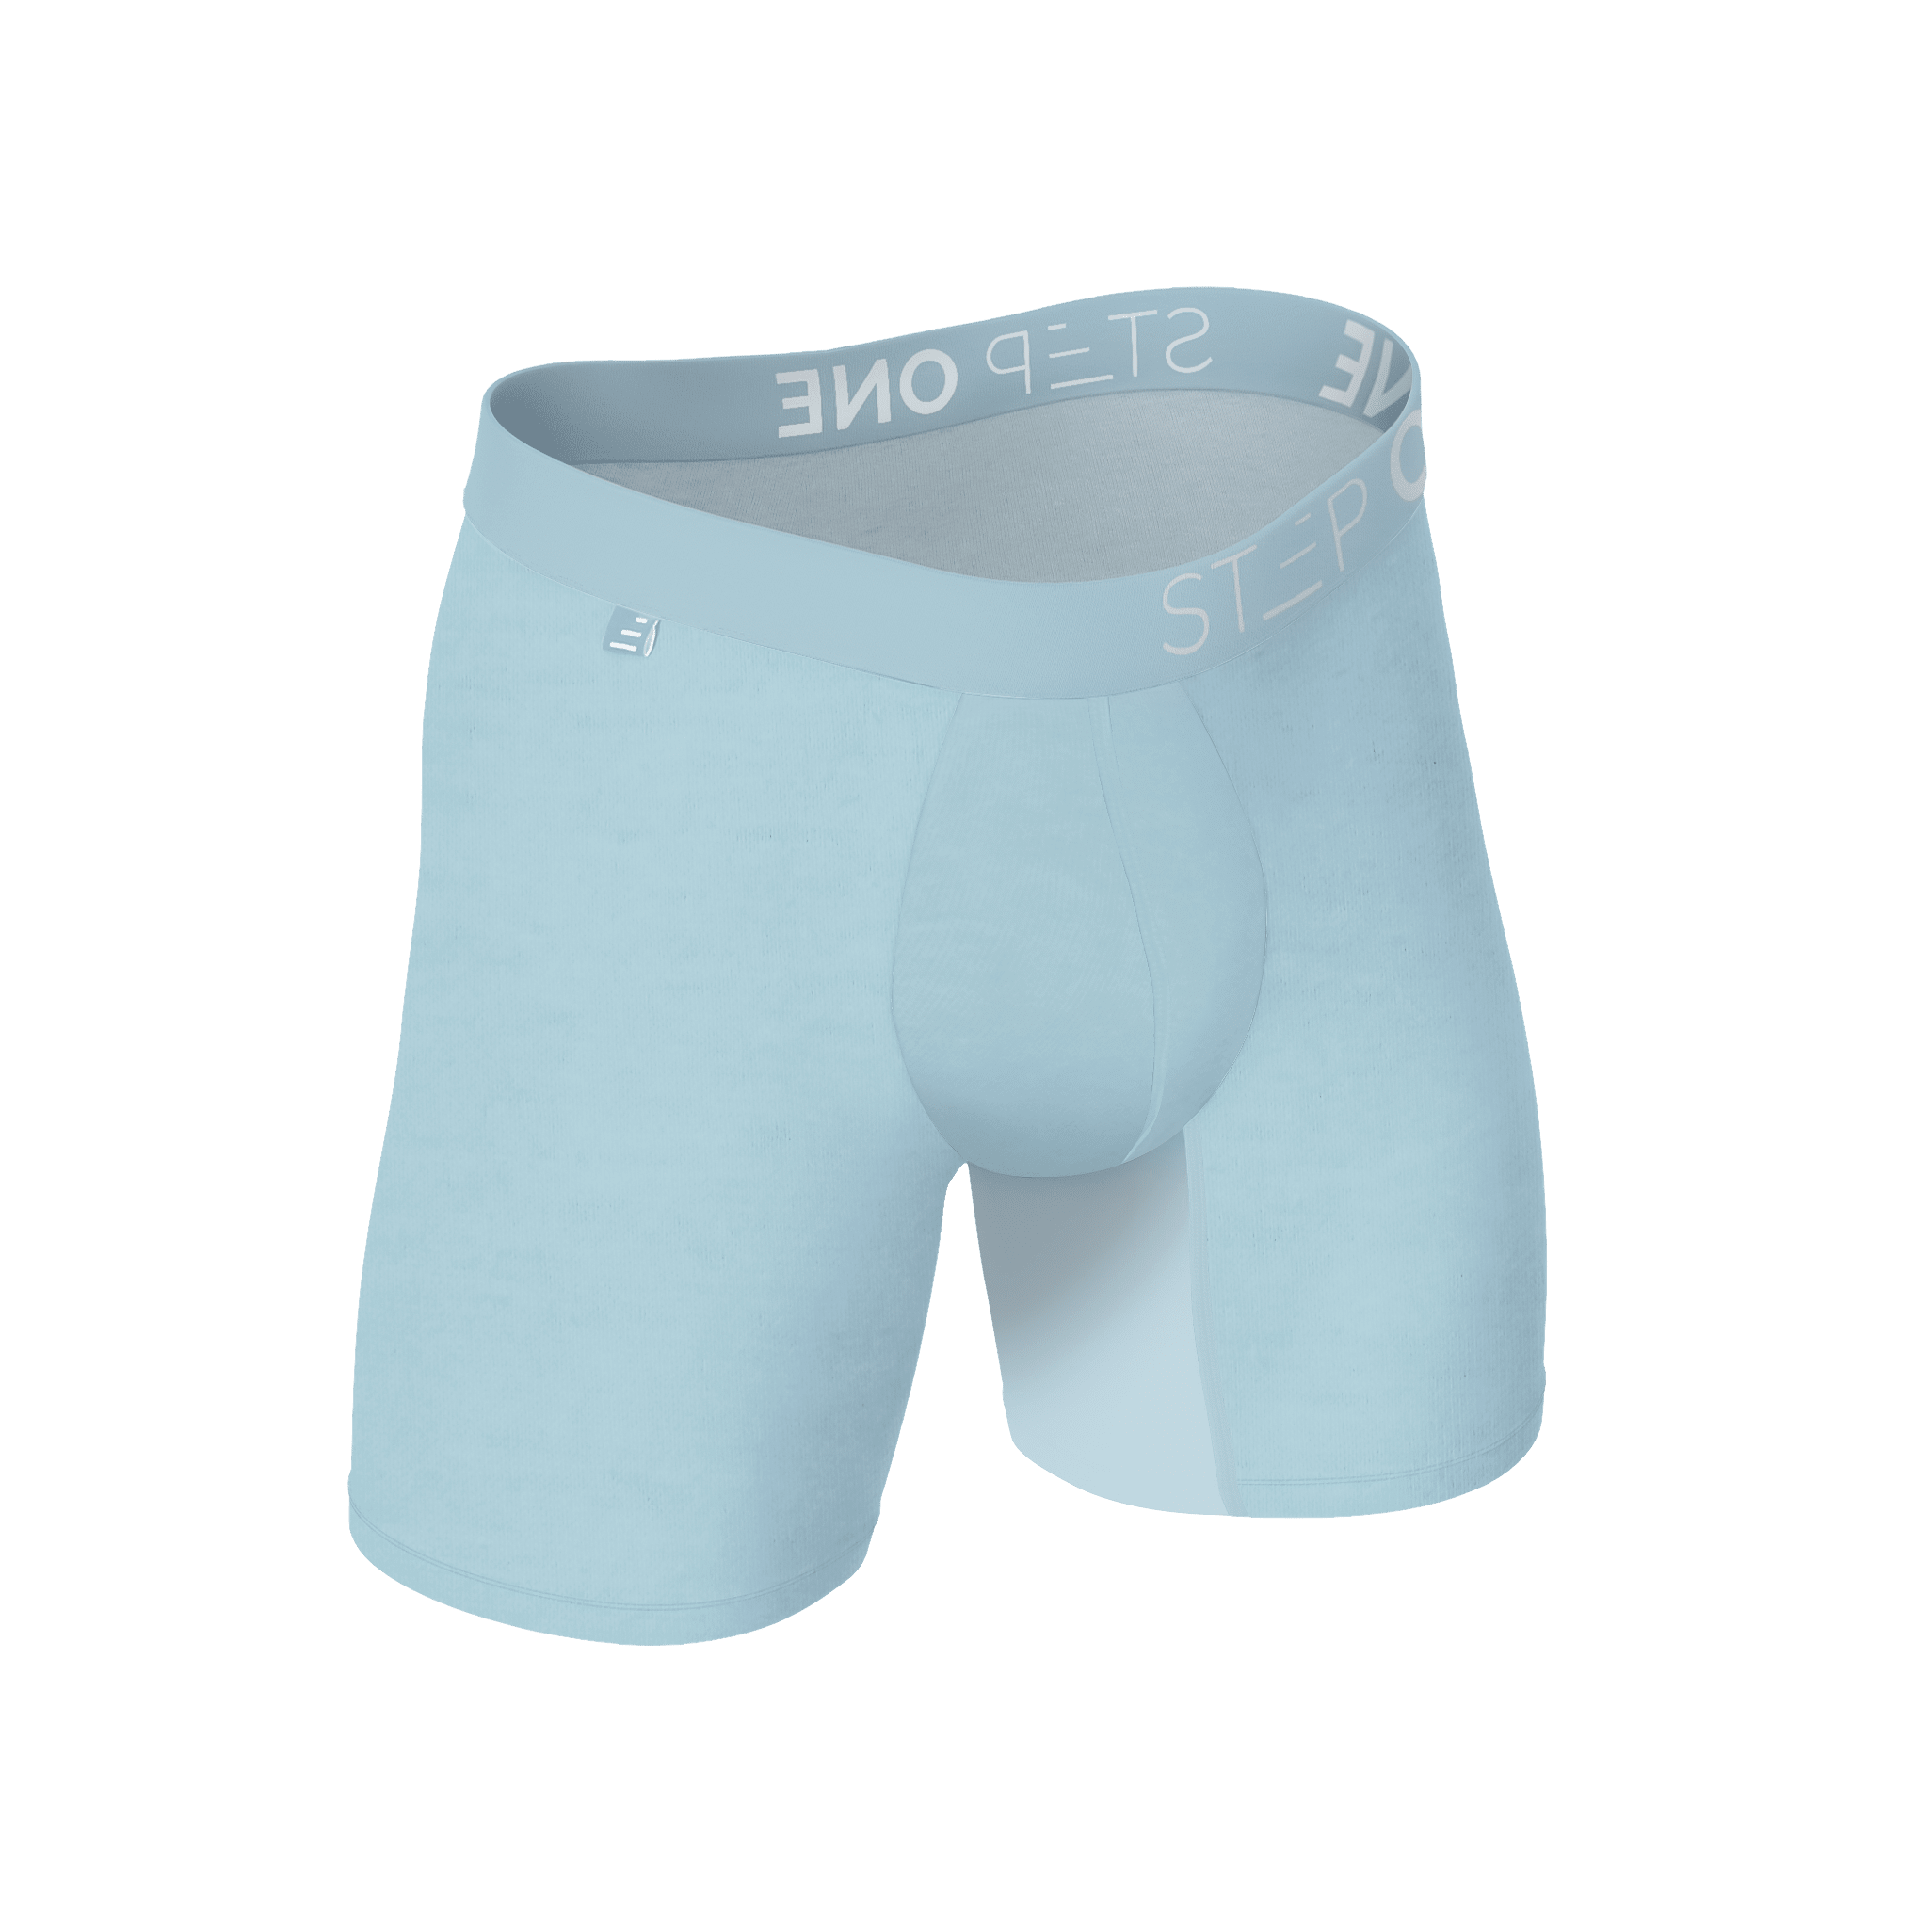 Hmwy-men Low Rise Cotton Boxer Shorts Trunks Comfy Bulge Pouch Briefs  Underwear Underpants Panties